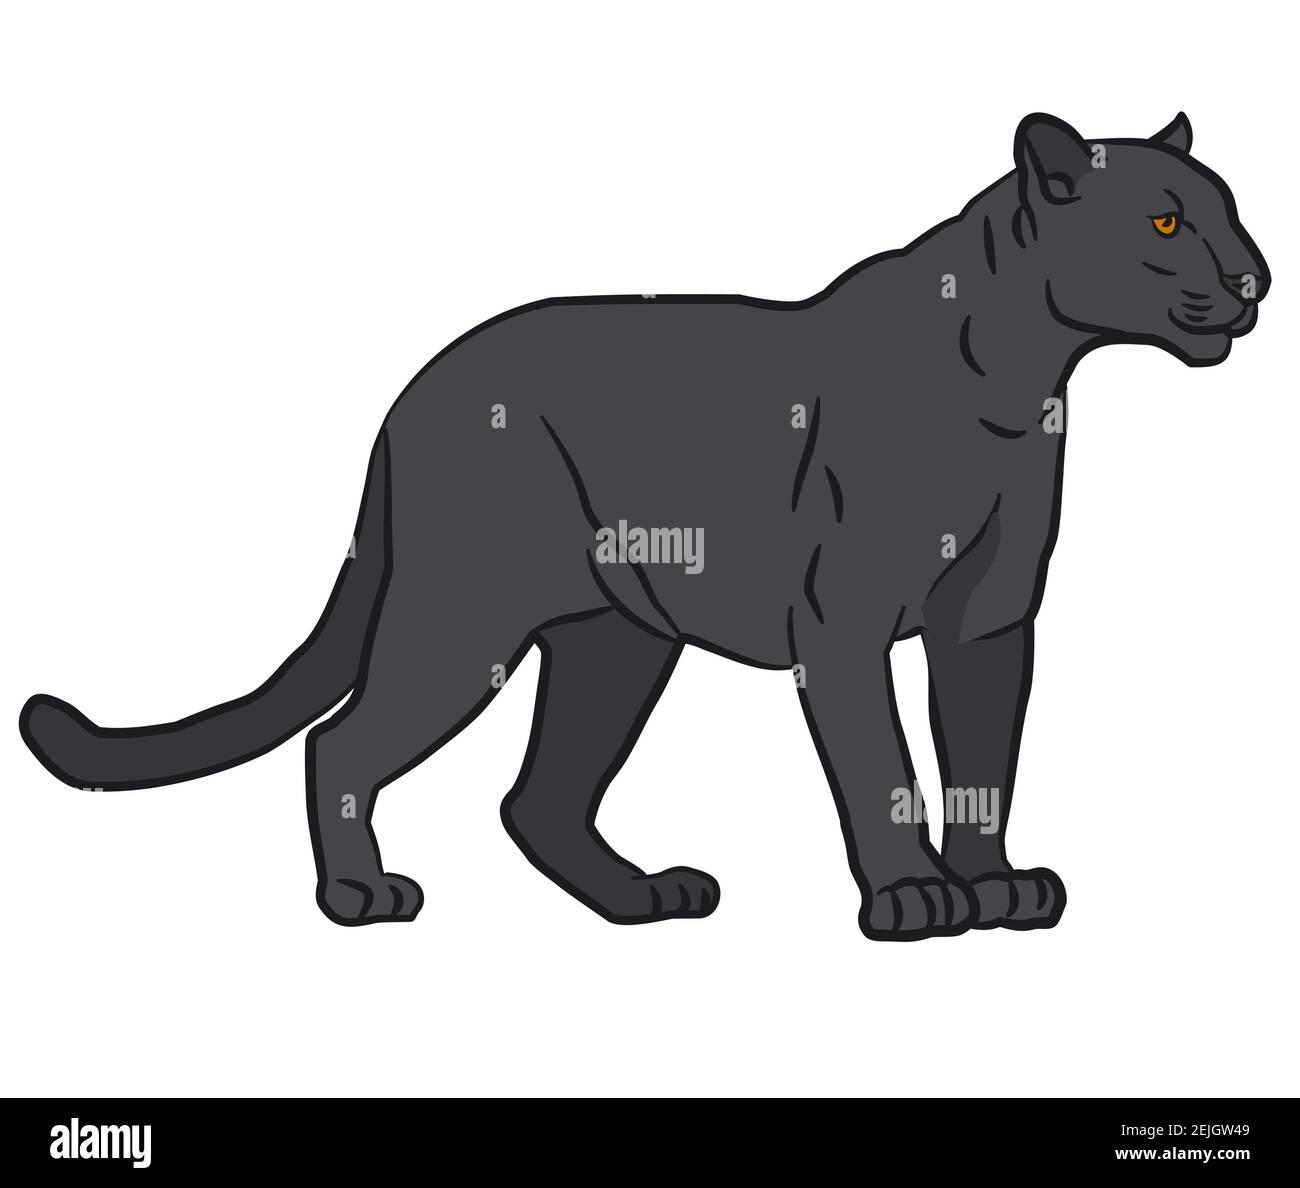 Zeichnung Illustration des wilden schwarzen Panthers Stock Vektor